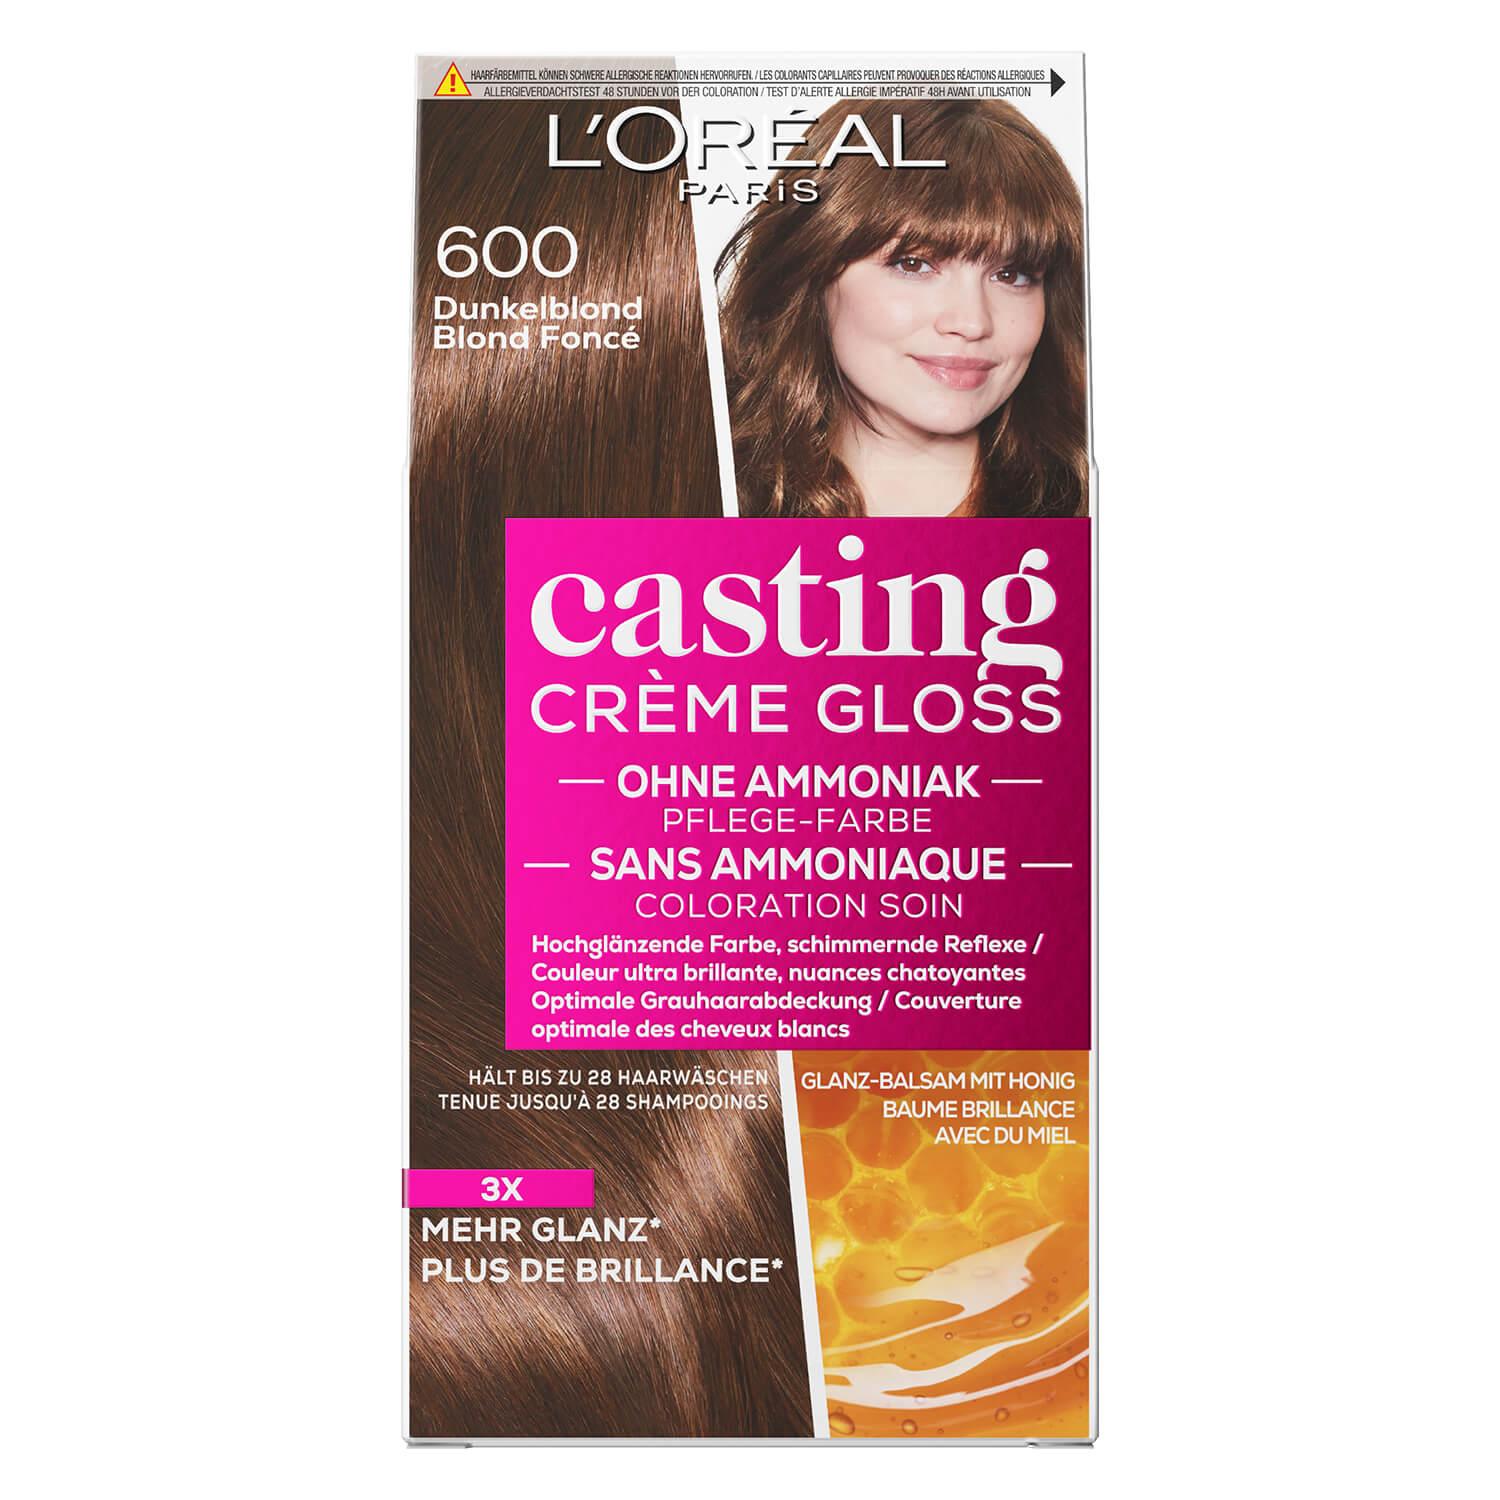 LOréal Casting - Crème Gloss 600 Dunkelblond